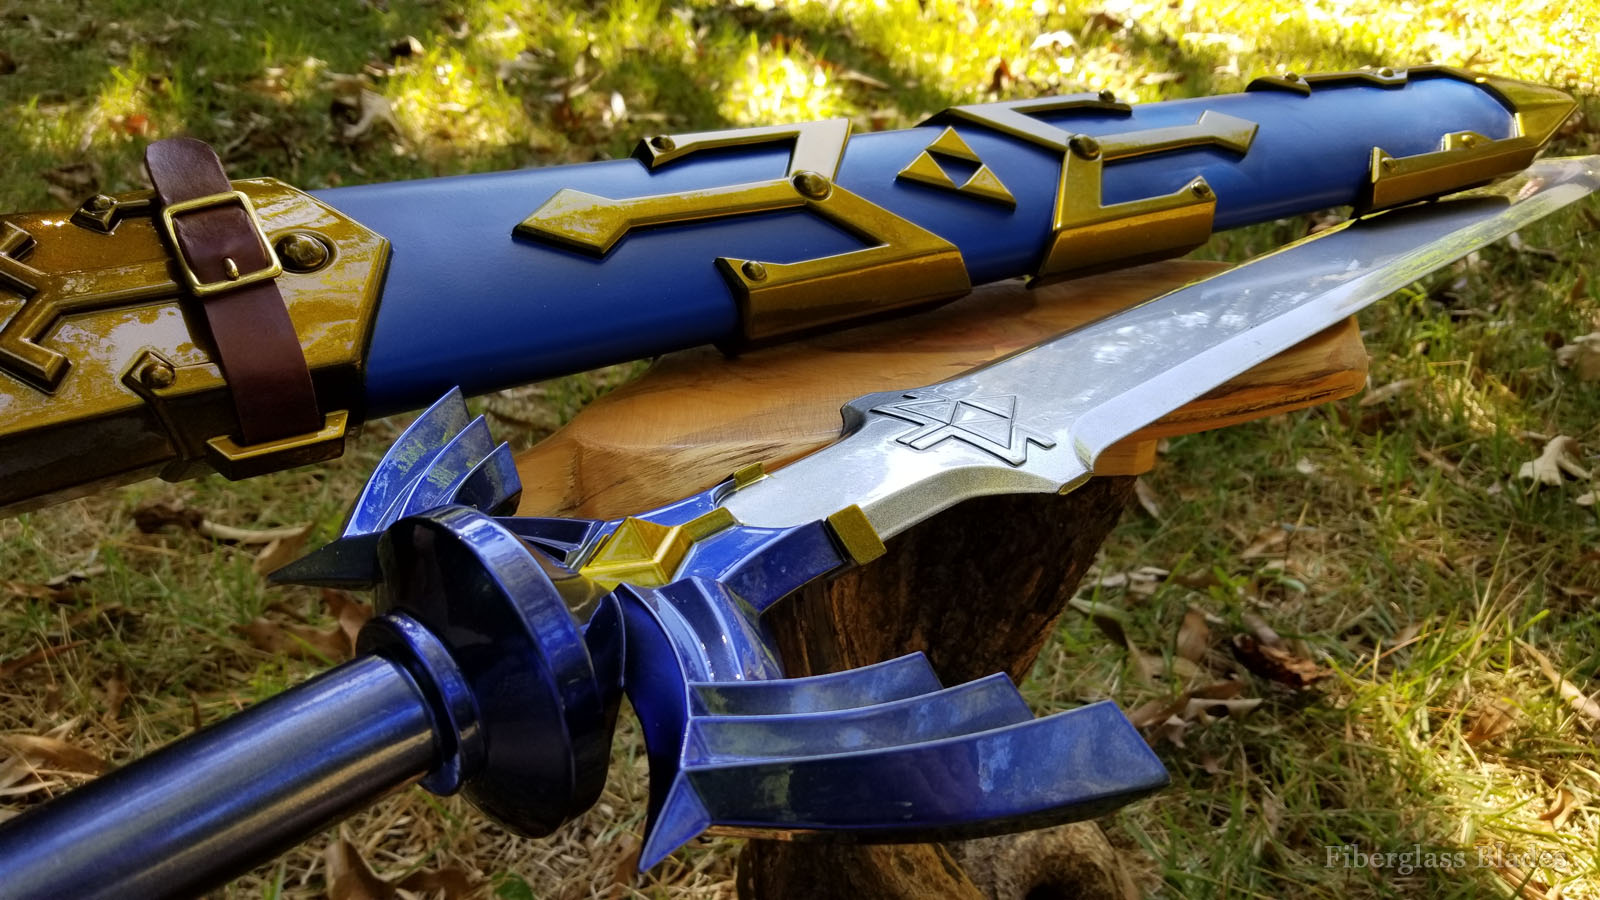 Legend of Zelda Skyward Sword - Breath of the Wild Master Sword cosplay replica prop